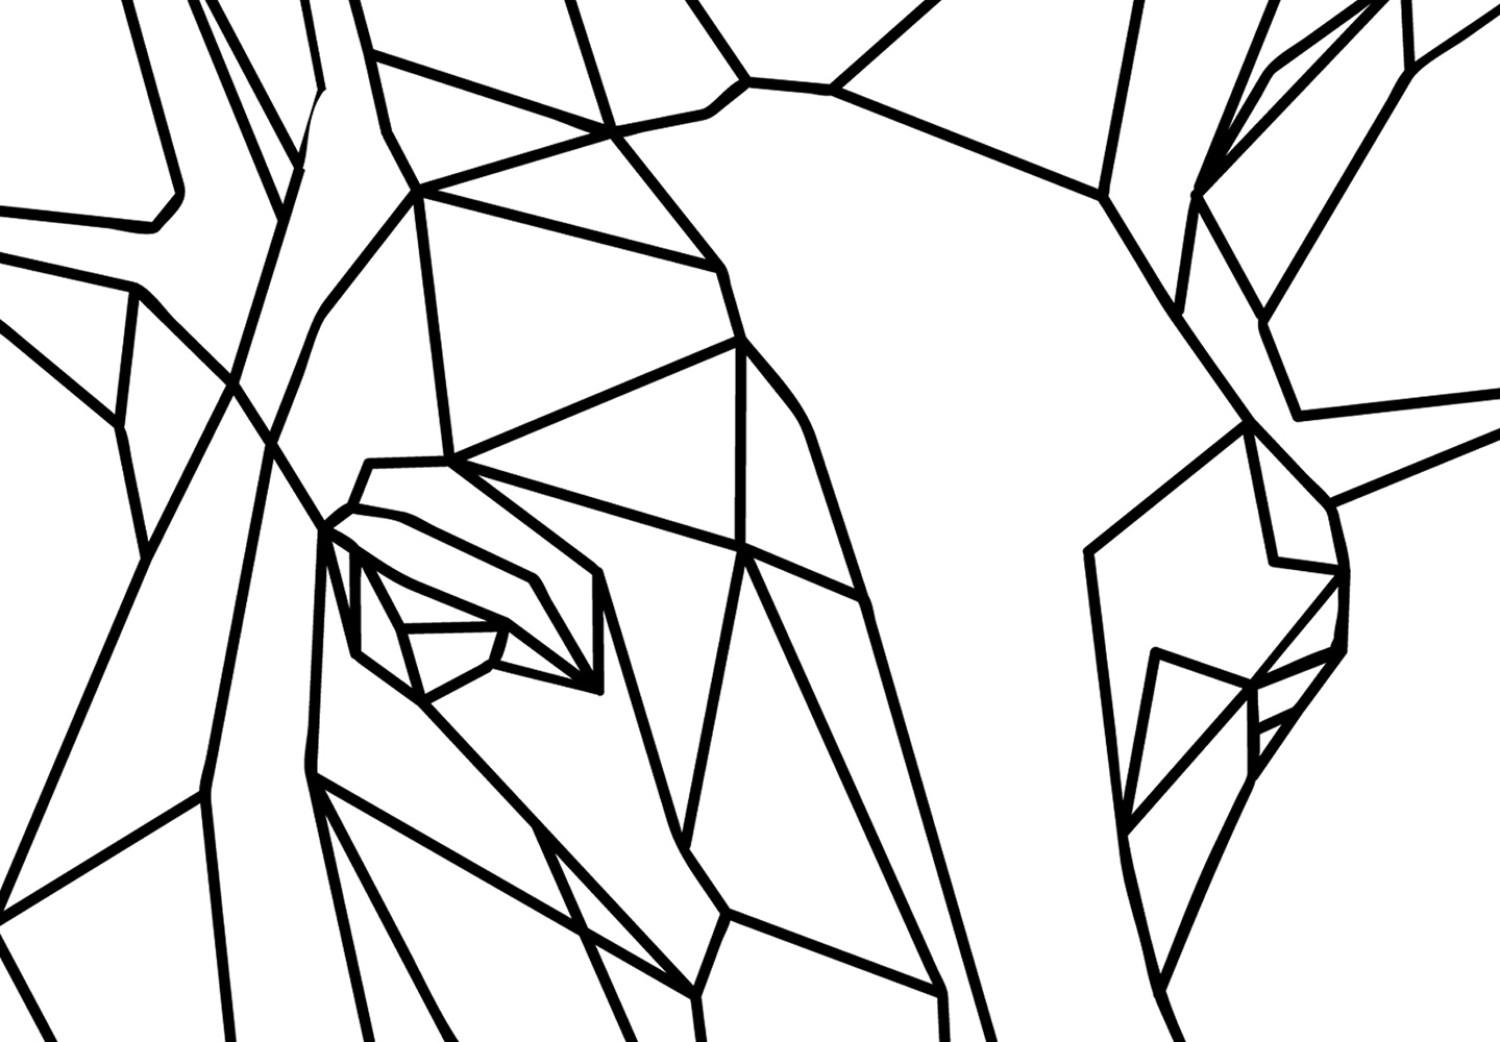 Poster Ciervo geométrico - animal con cuernos